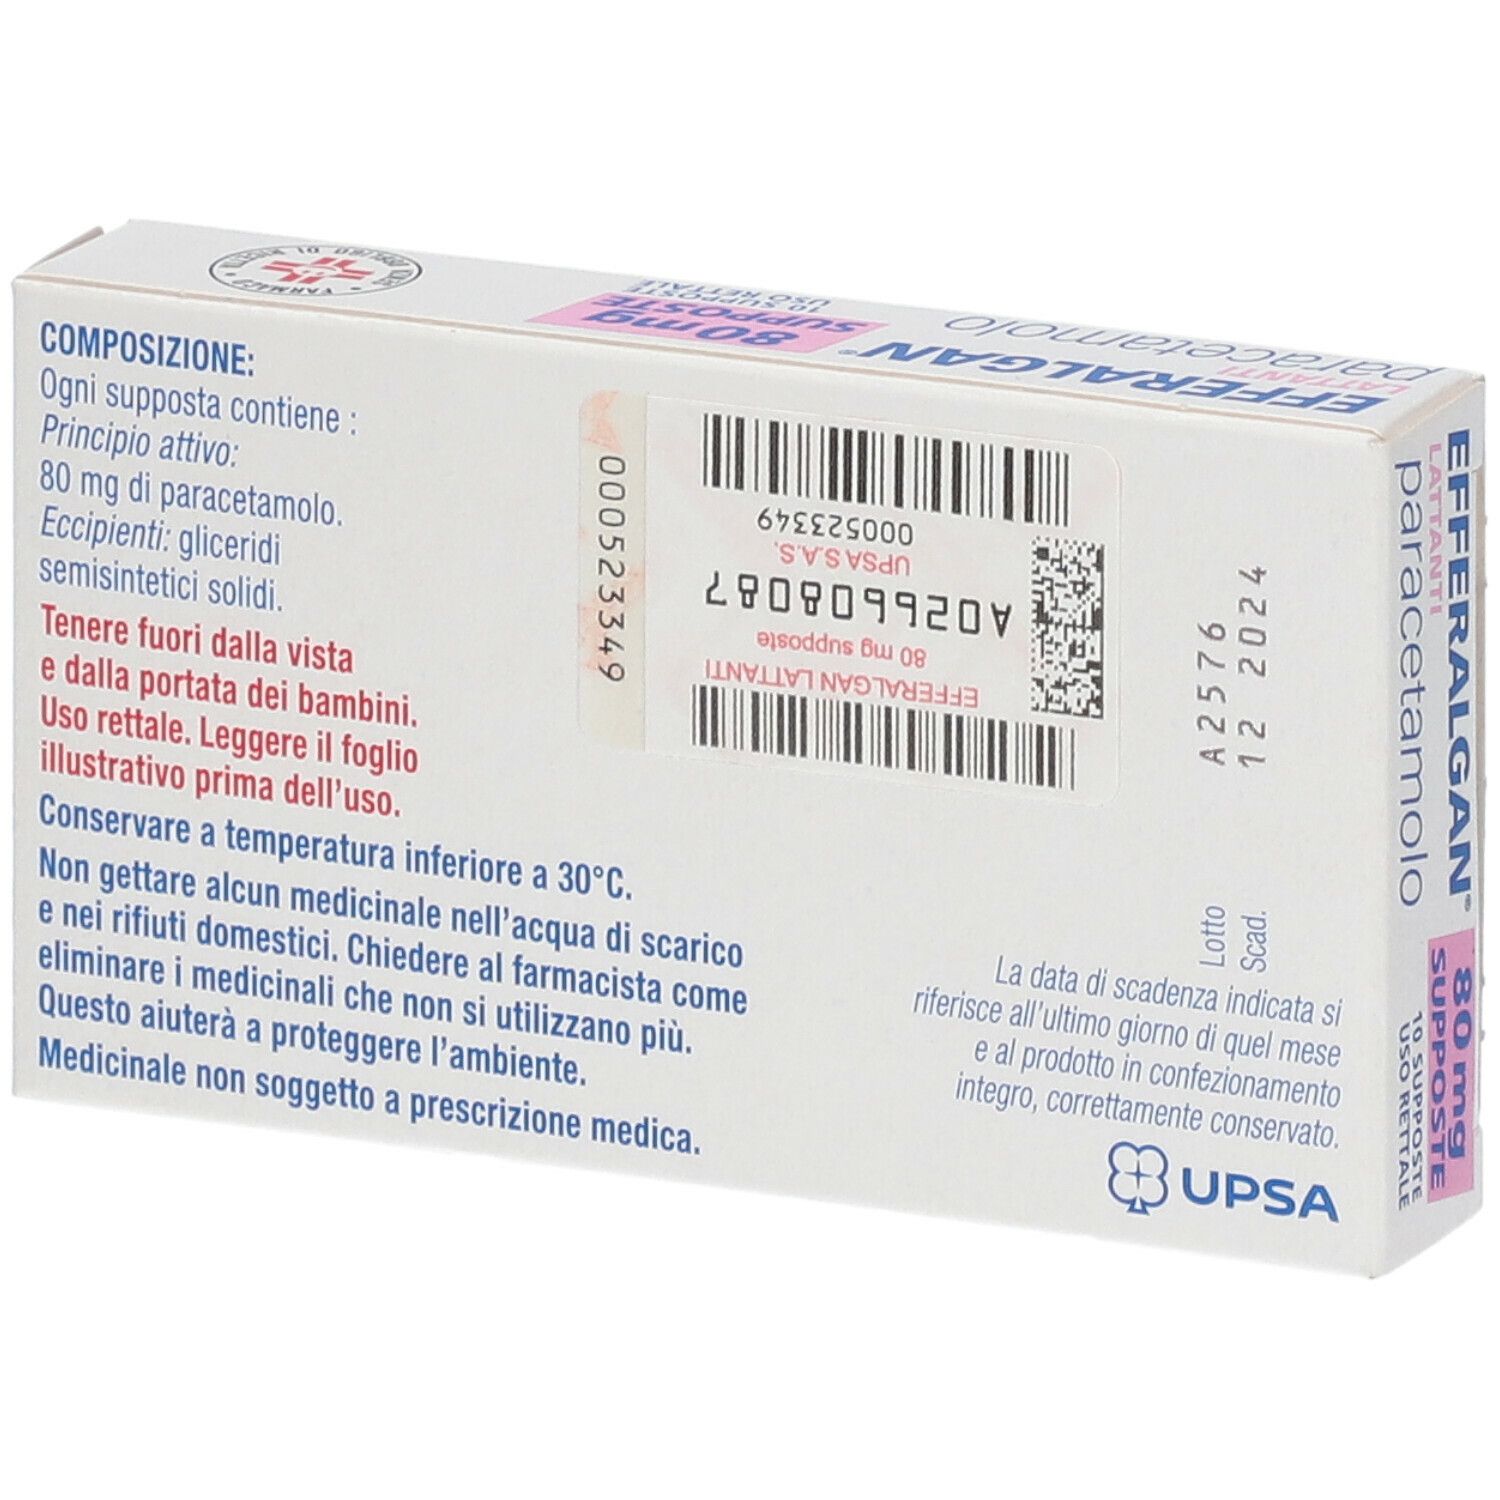 EFFERALGAN® Supposte 80 mg